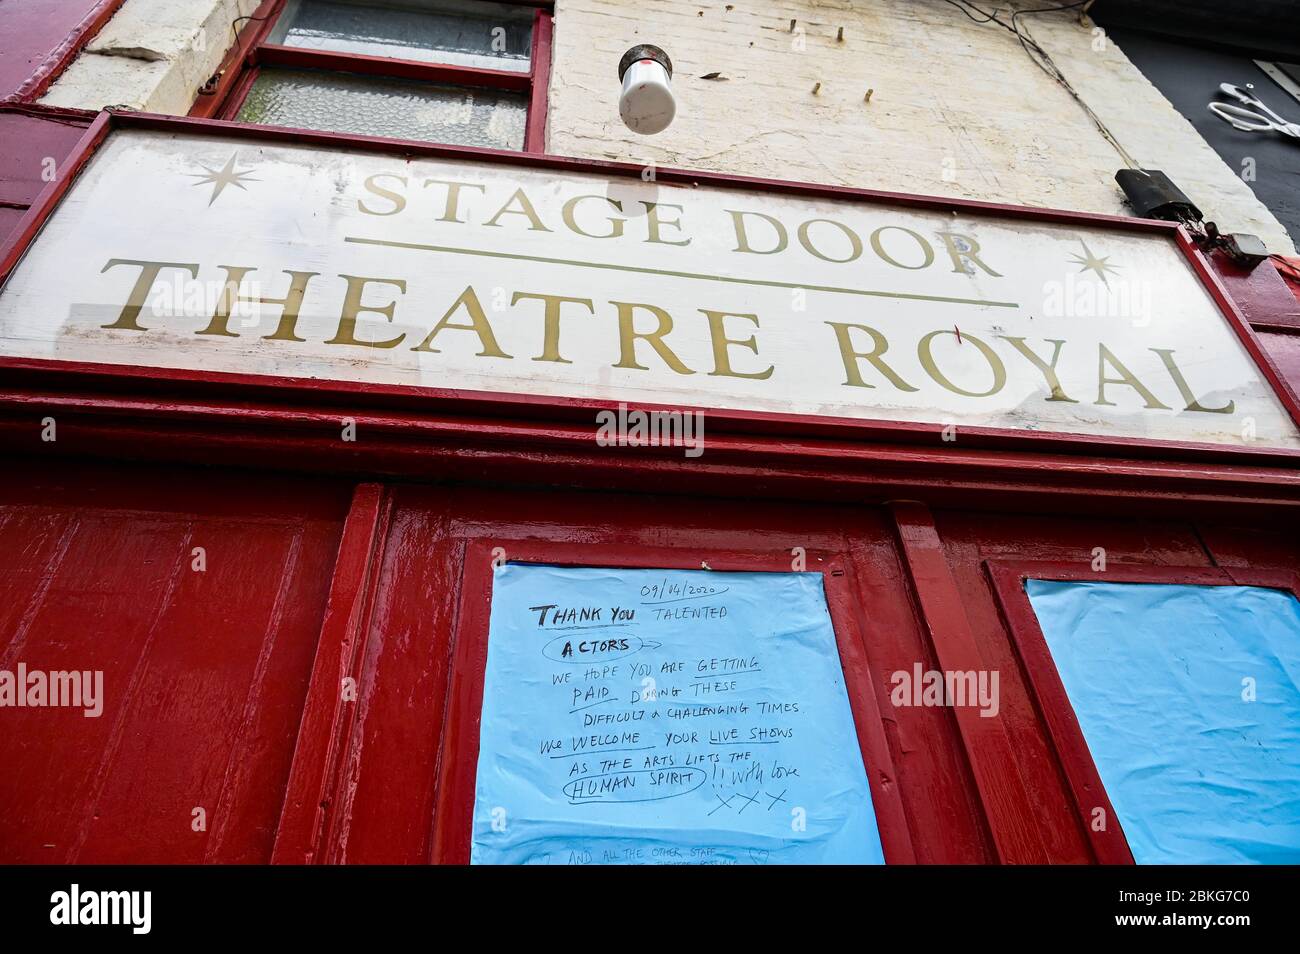 Brighton UK 4. Mai 2020 - die Theaterbühne Royal in Brighton während der Blockierung der COVID-19 Pandemie-Krise des Coronavirus. Die Regierung wird erwartet, dass sie einige der Lockdown-Maßnahmen lockern und die Unternehmen in der nächsten Woche wieder an die Arbeit bringen wird. Quelle: Simon Dack / Alamy Live News Stockfoto